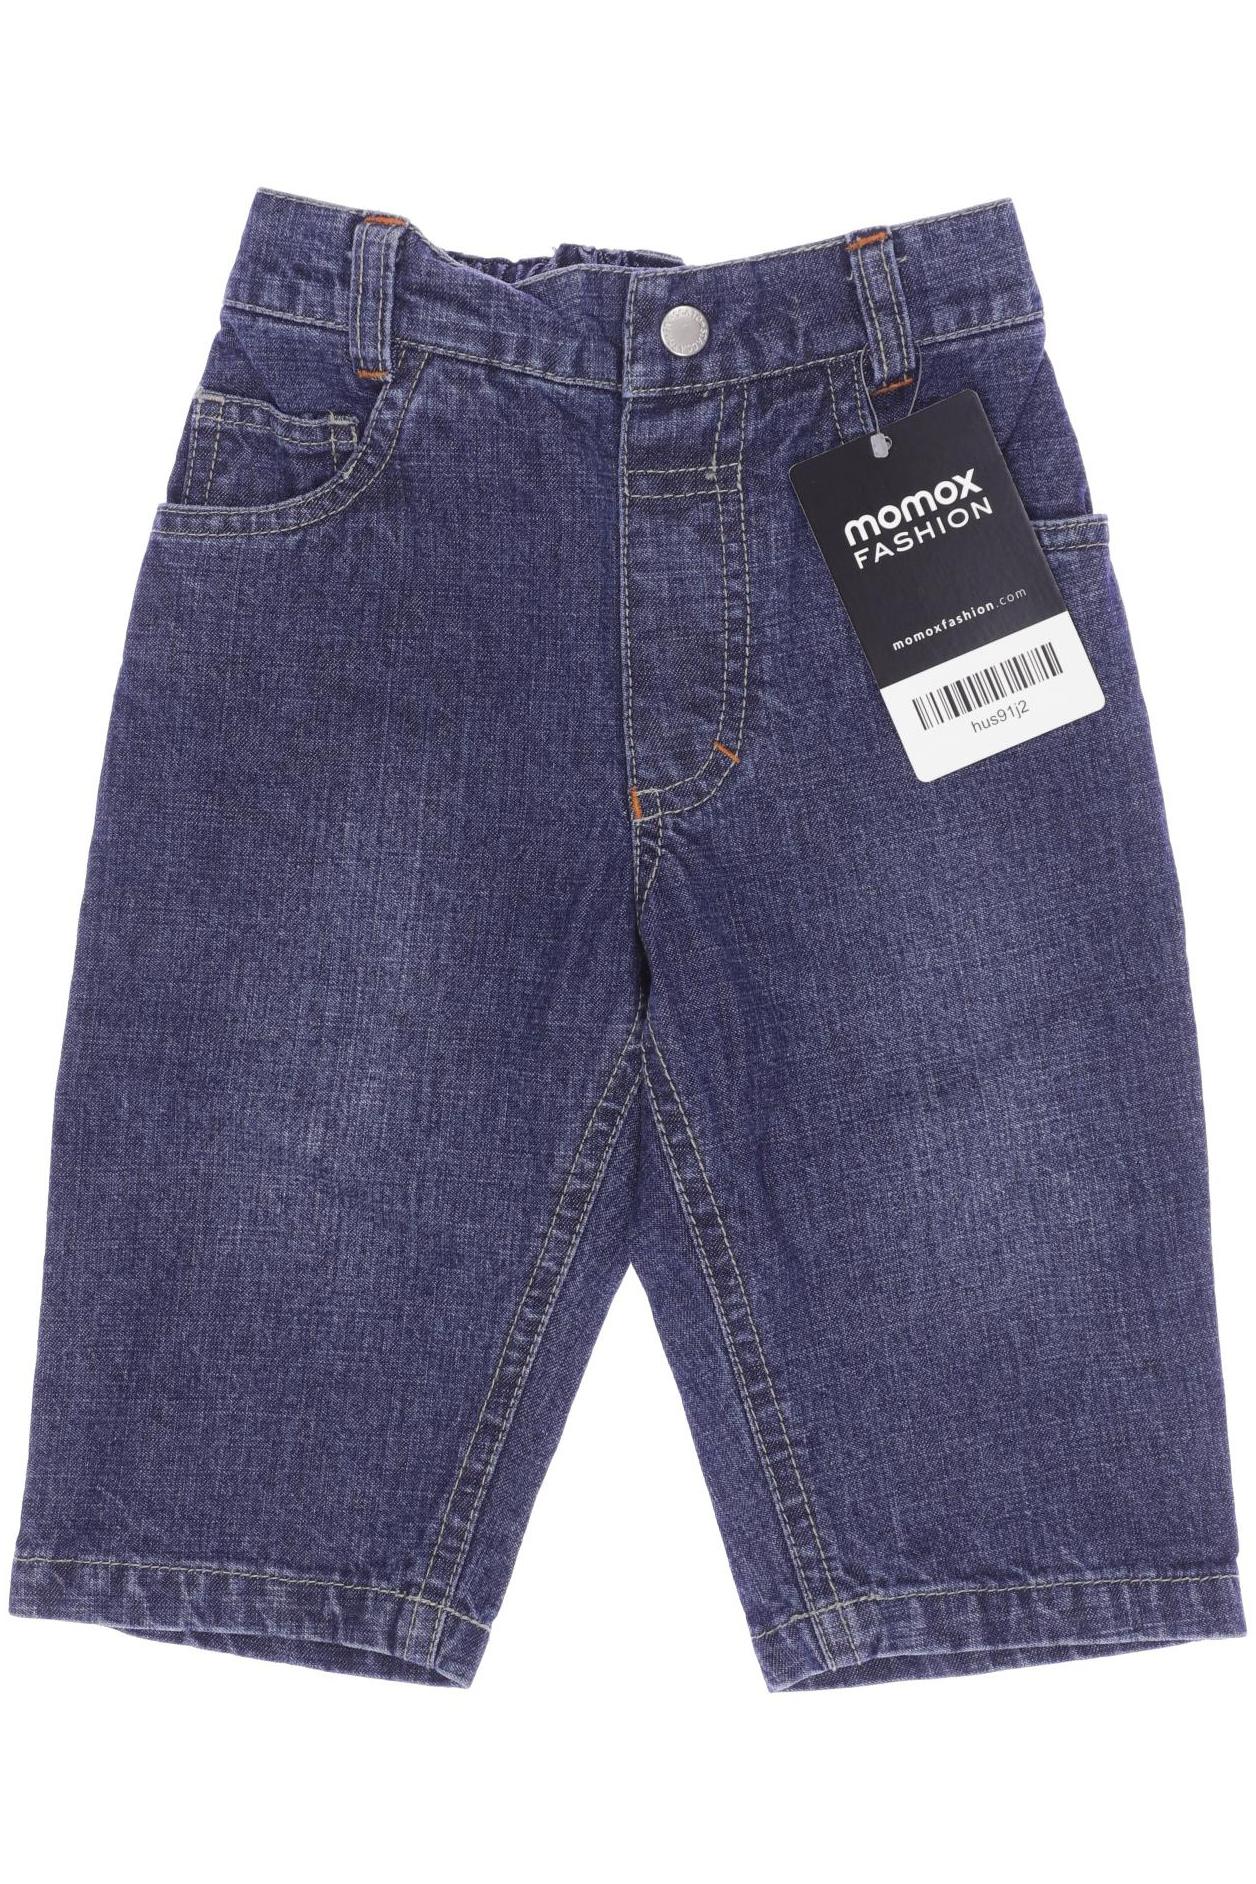 Staccato Herren Jeans, blau, Gr. 68 von Staccato